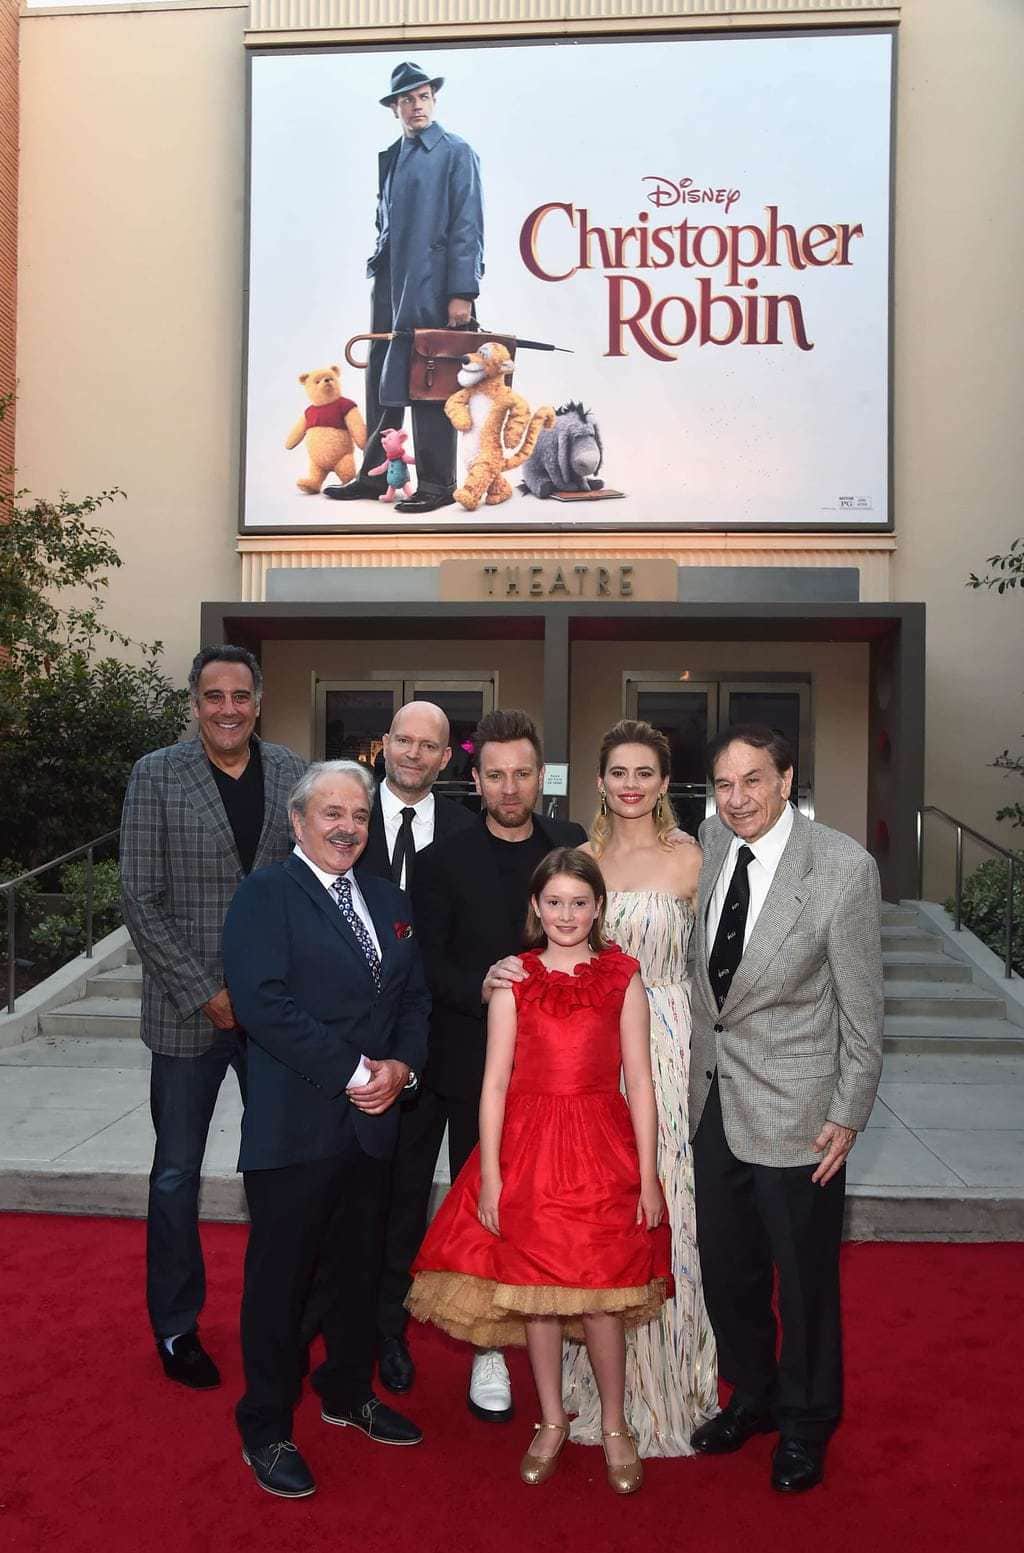 Disney's Red Carpet for Christopher Robin